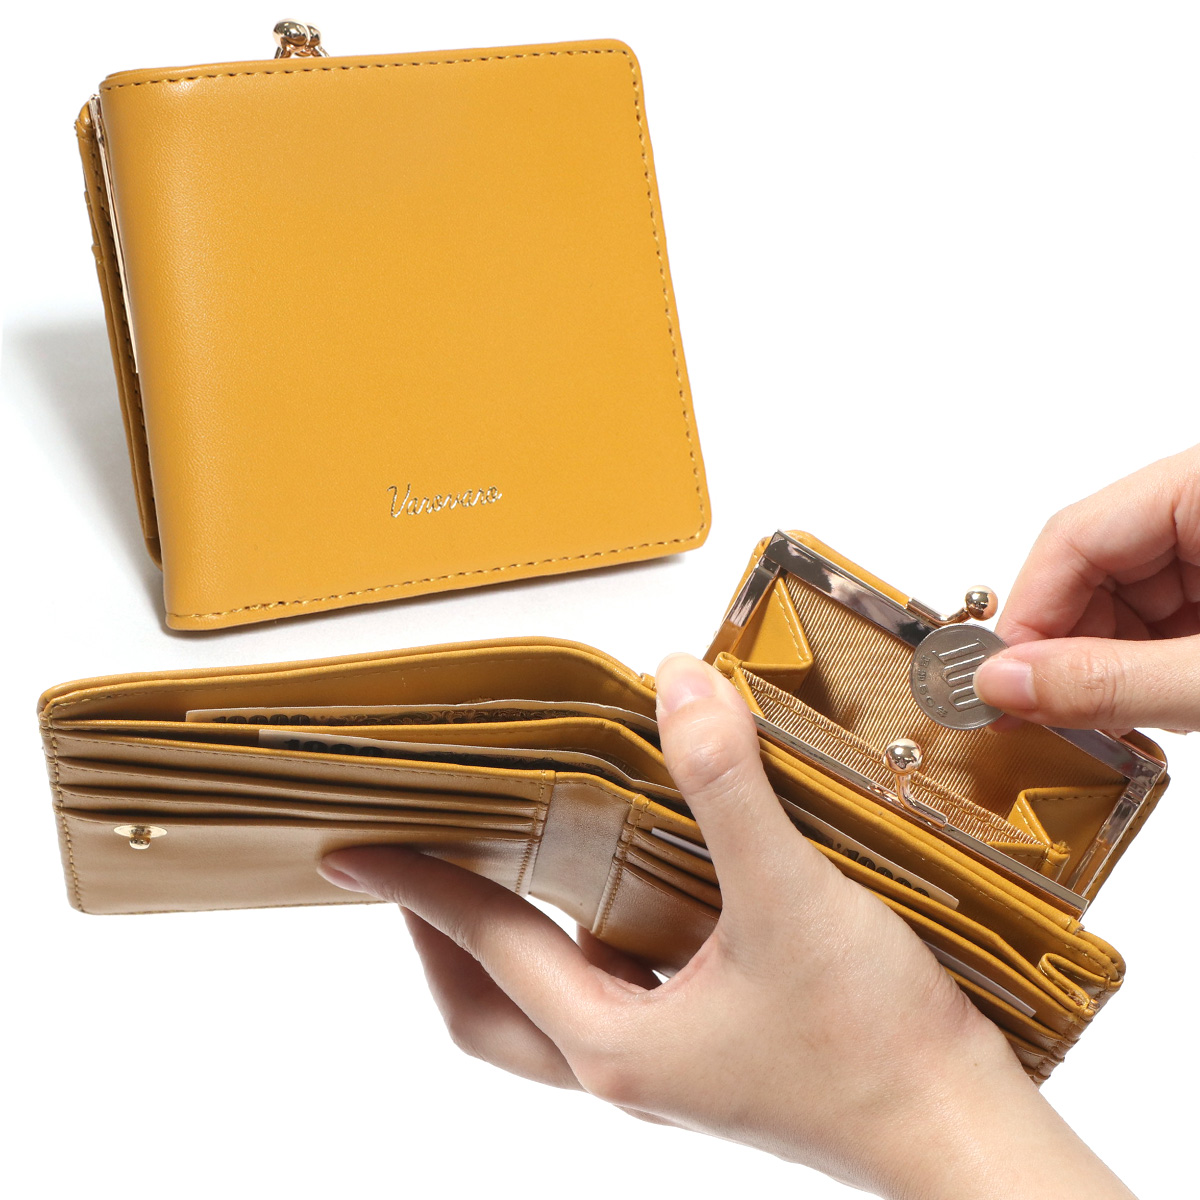 イエロー 黄色 二つ折り財布 ミニ財布 レディース 2つ折り財布 コインケース